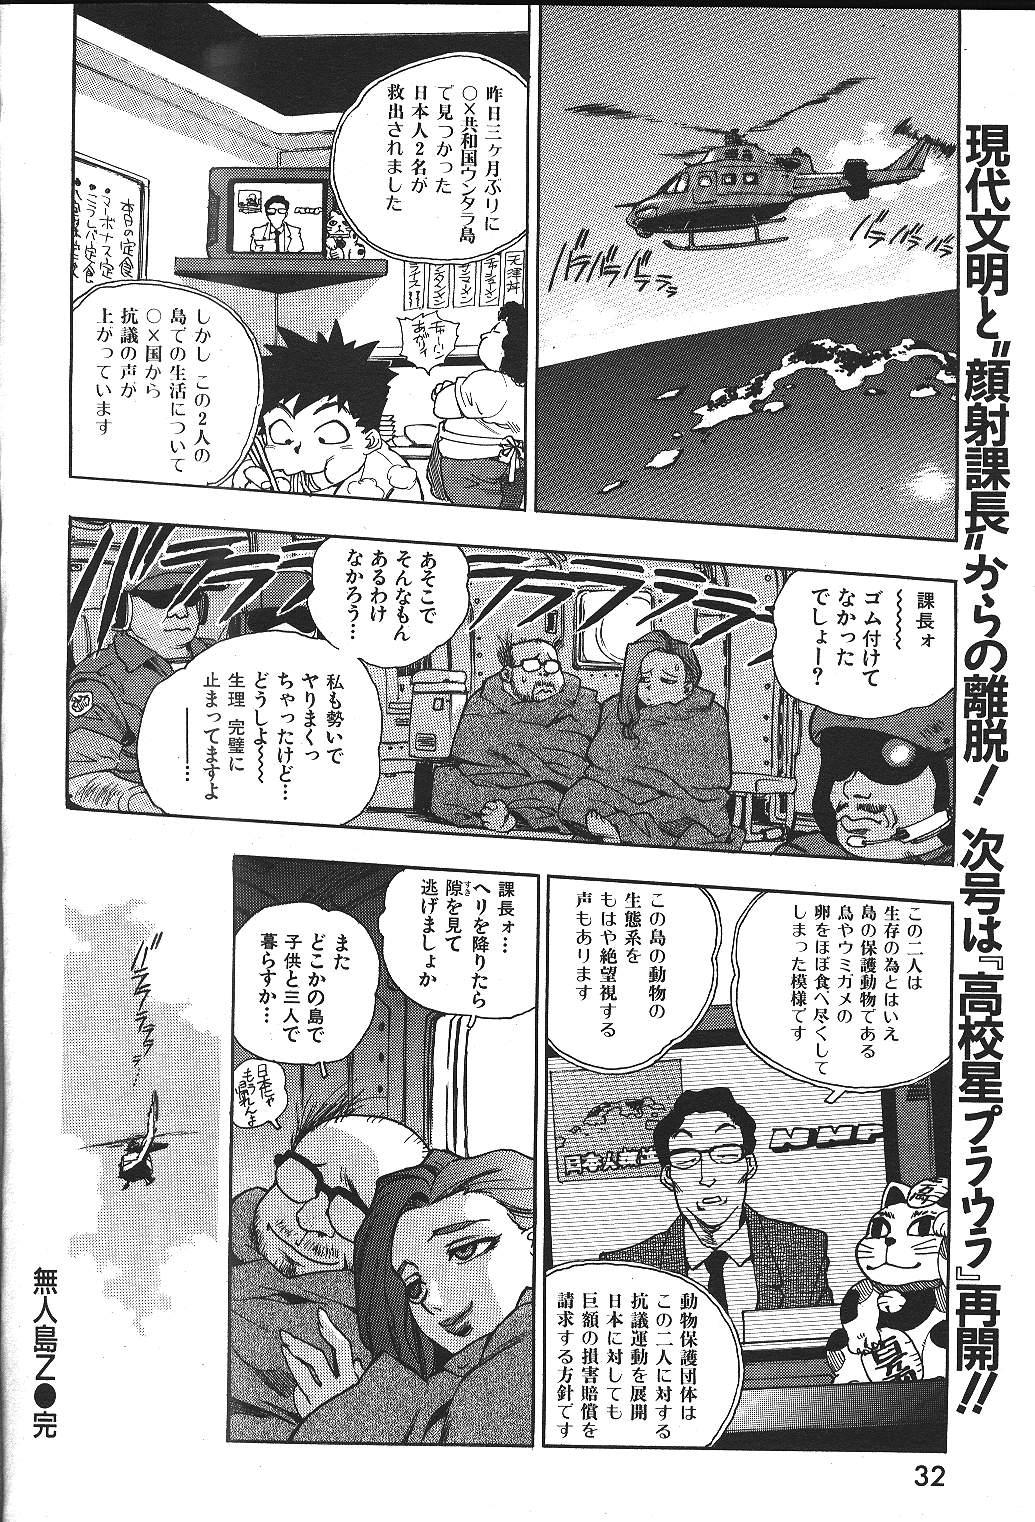 COMIC GEKIMAN 2000-07 Vol. 26 26